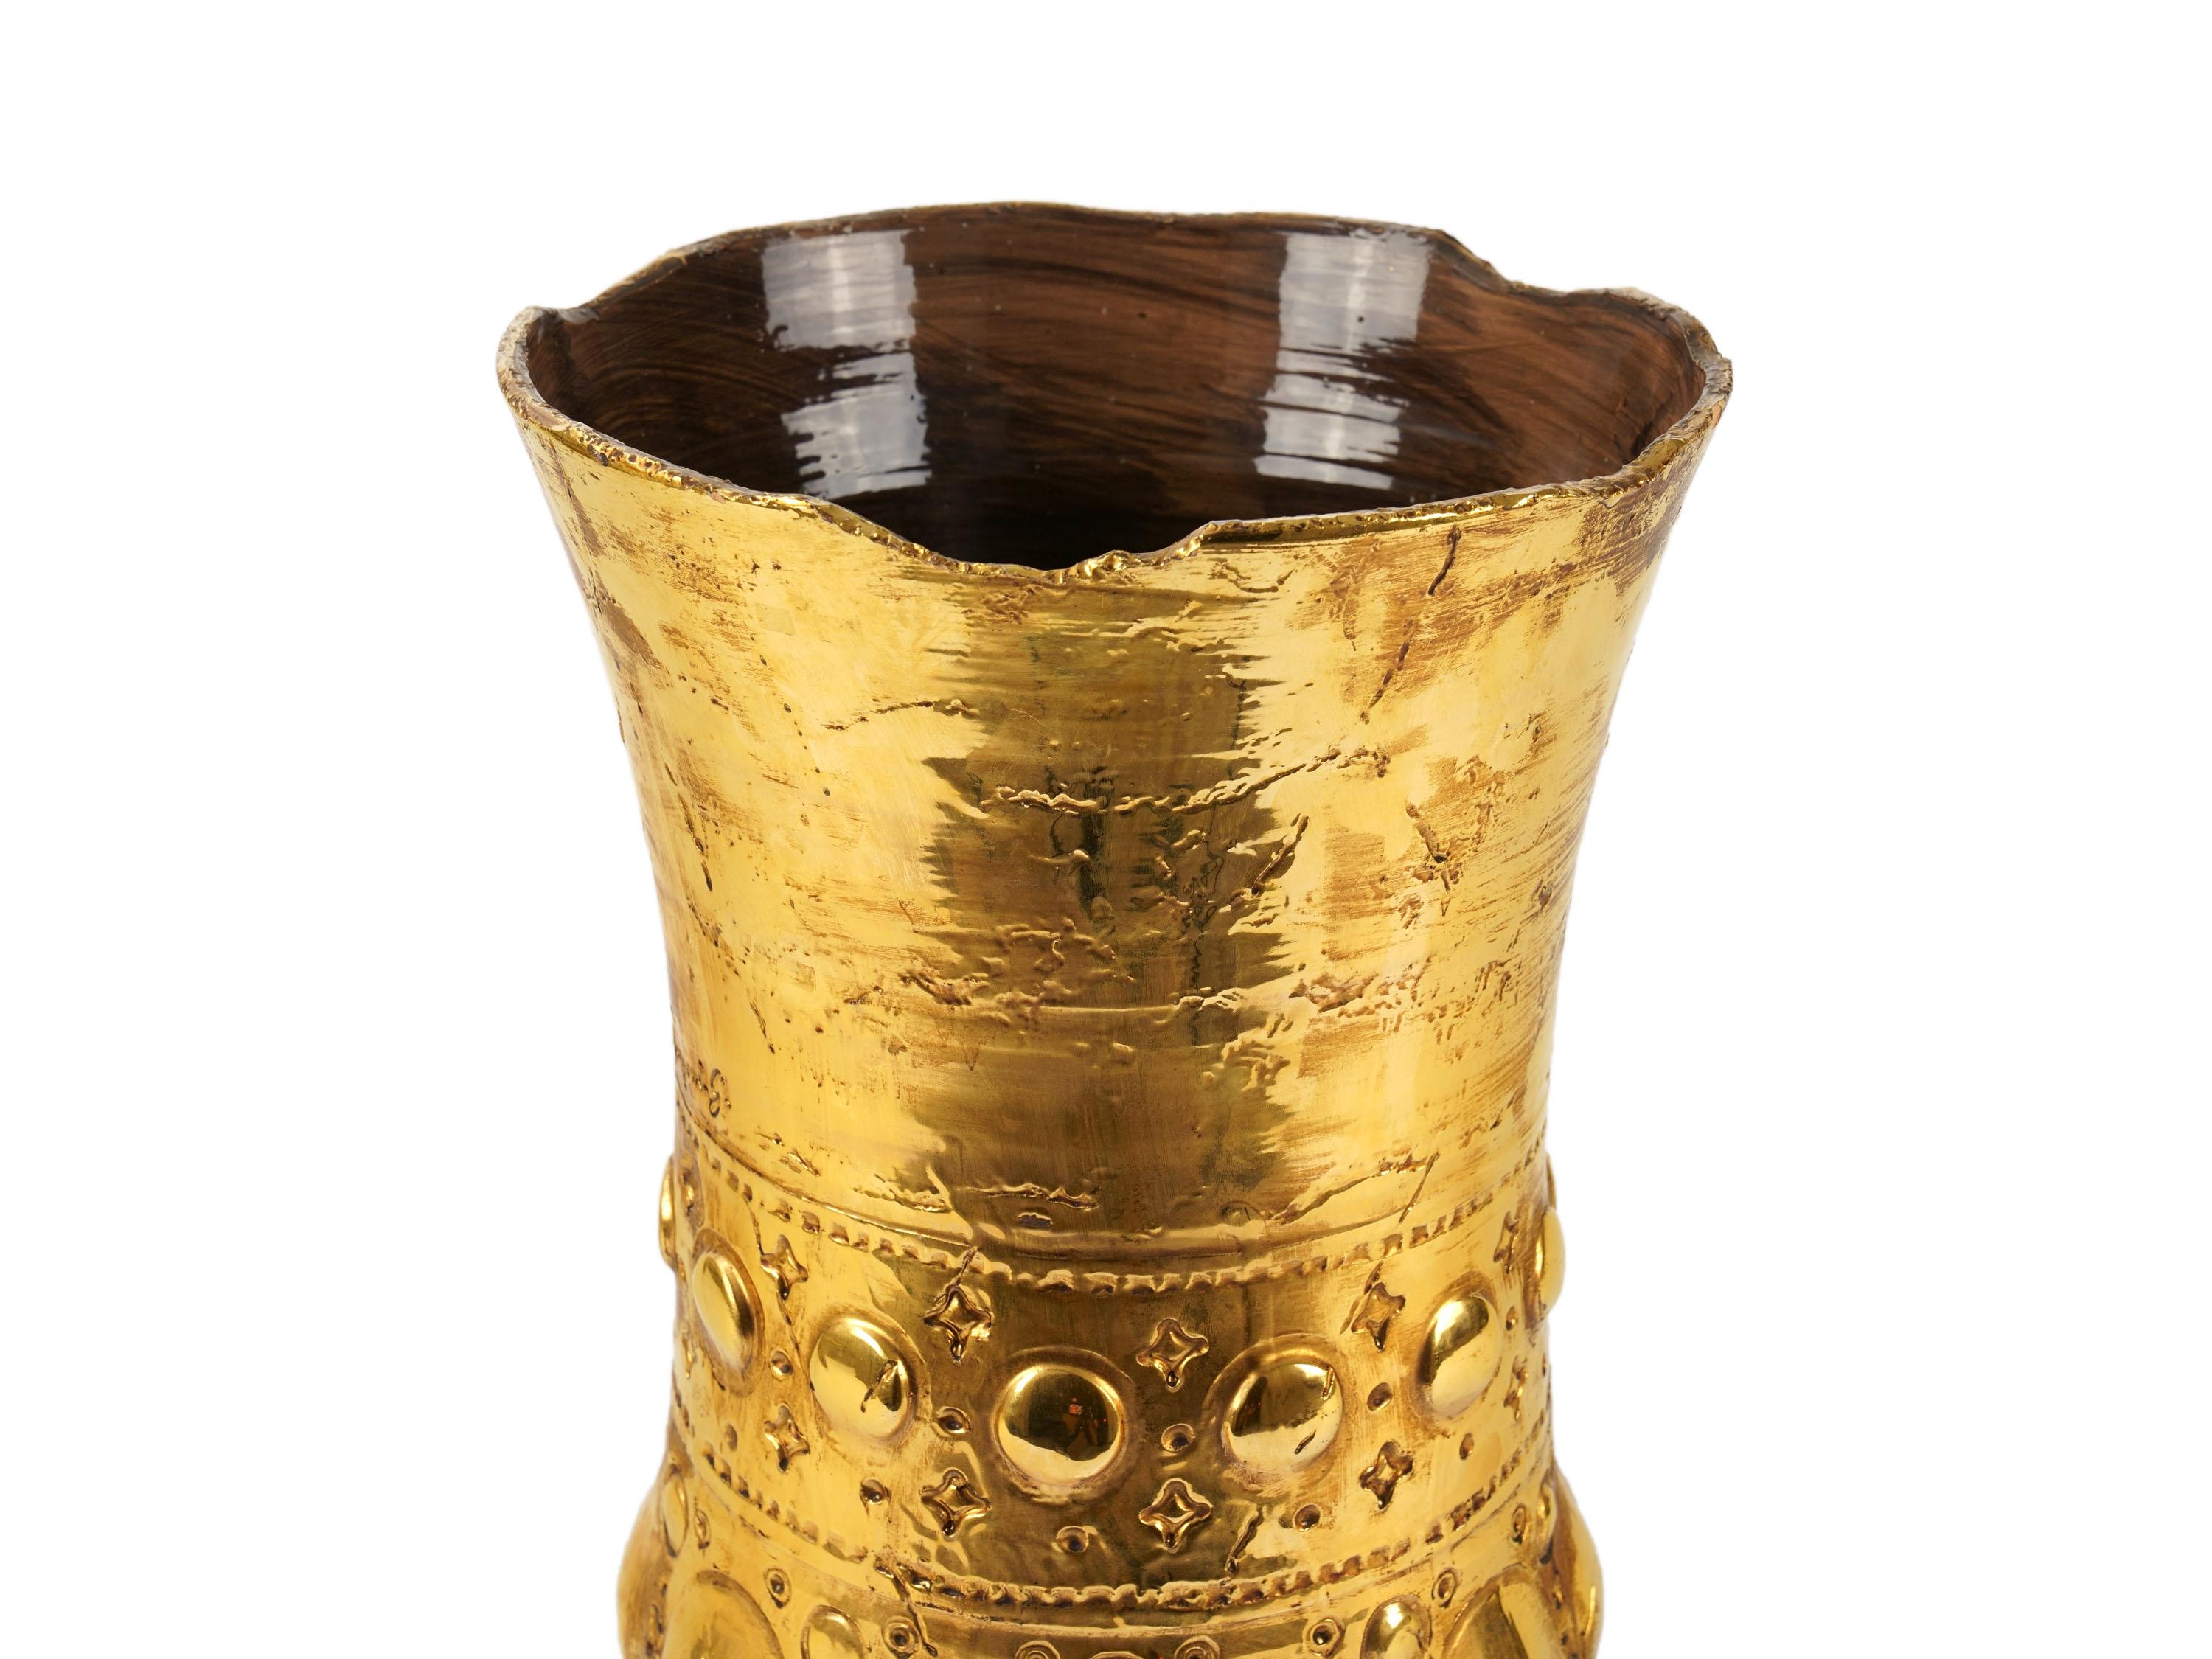 Skulpturale Vase, handgefertigt in Italien und verziert mit der Lustertechnik in 24 Kt Gold. Abmessungen: T 29 cm, H 46 cm. Der gesamte Herstellungsprozess wird in Italien von Hand durchgeführt.
Die Vase ist inspiriert von einem der